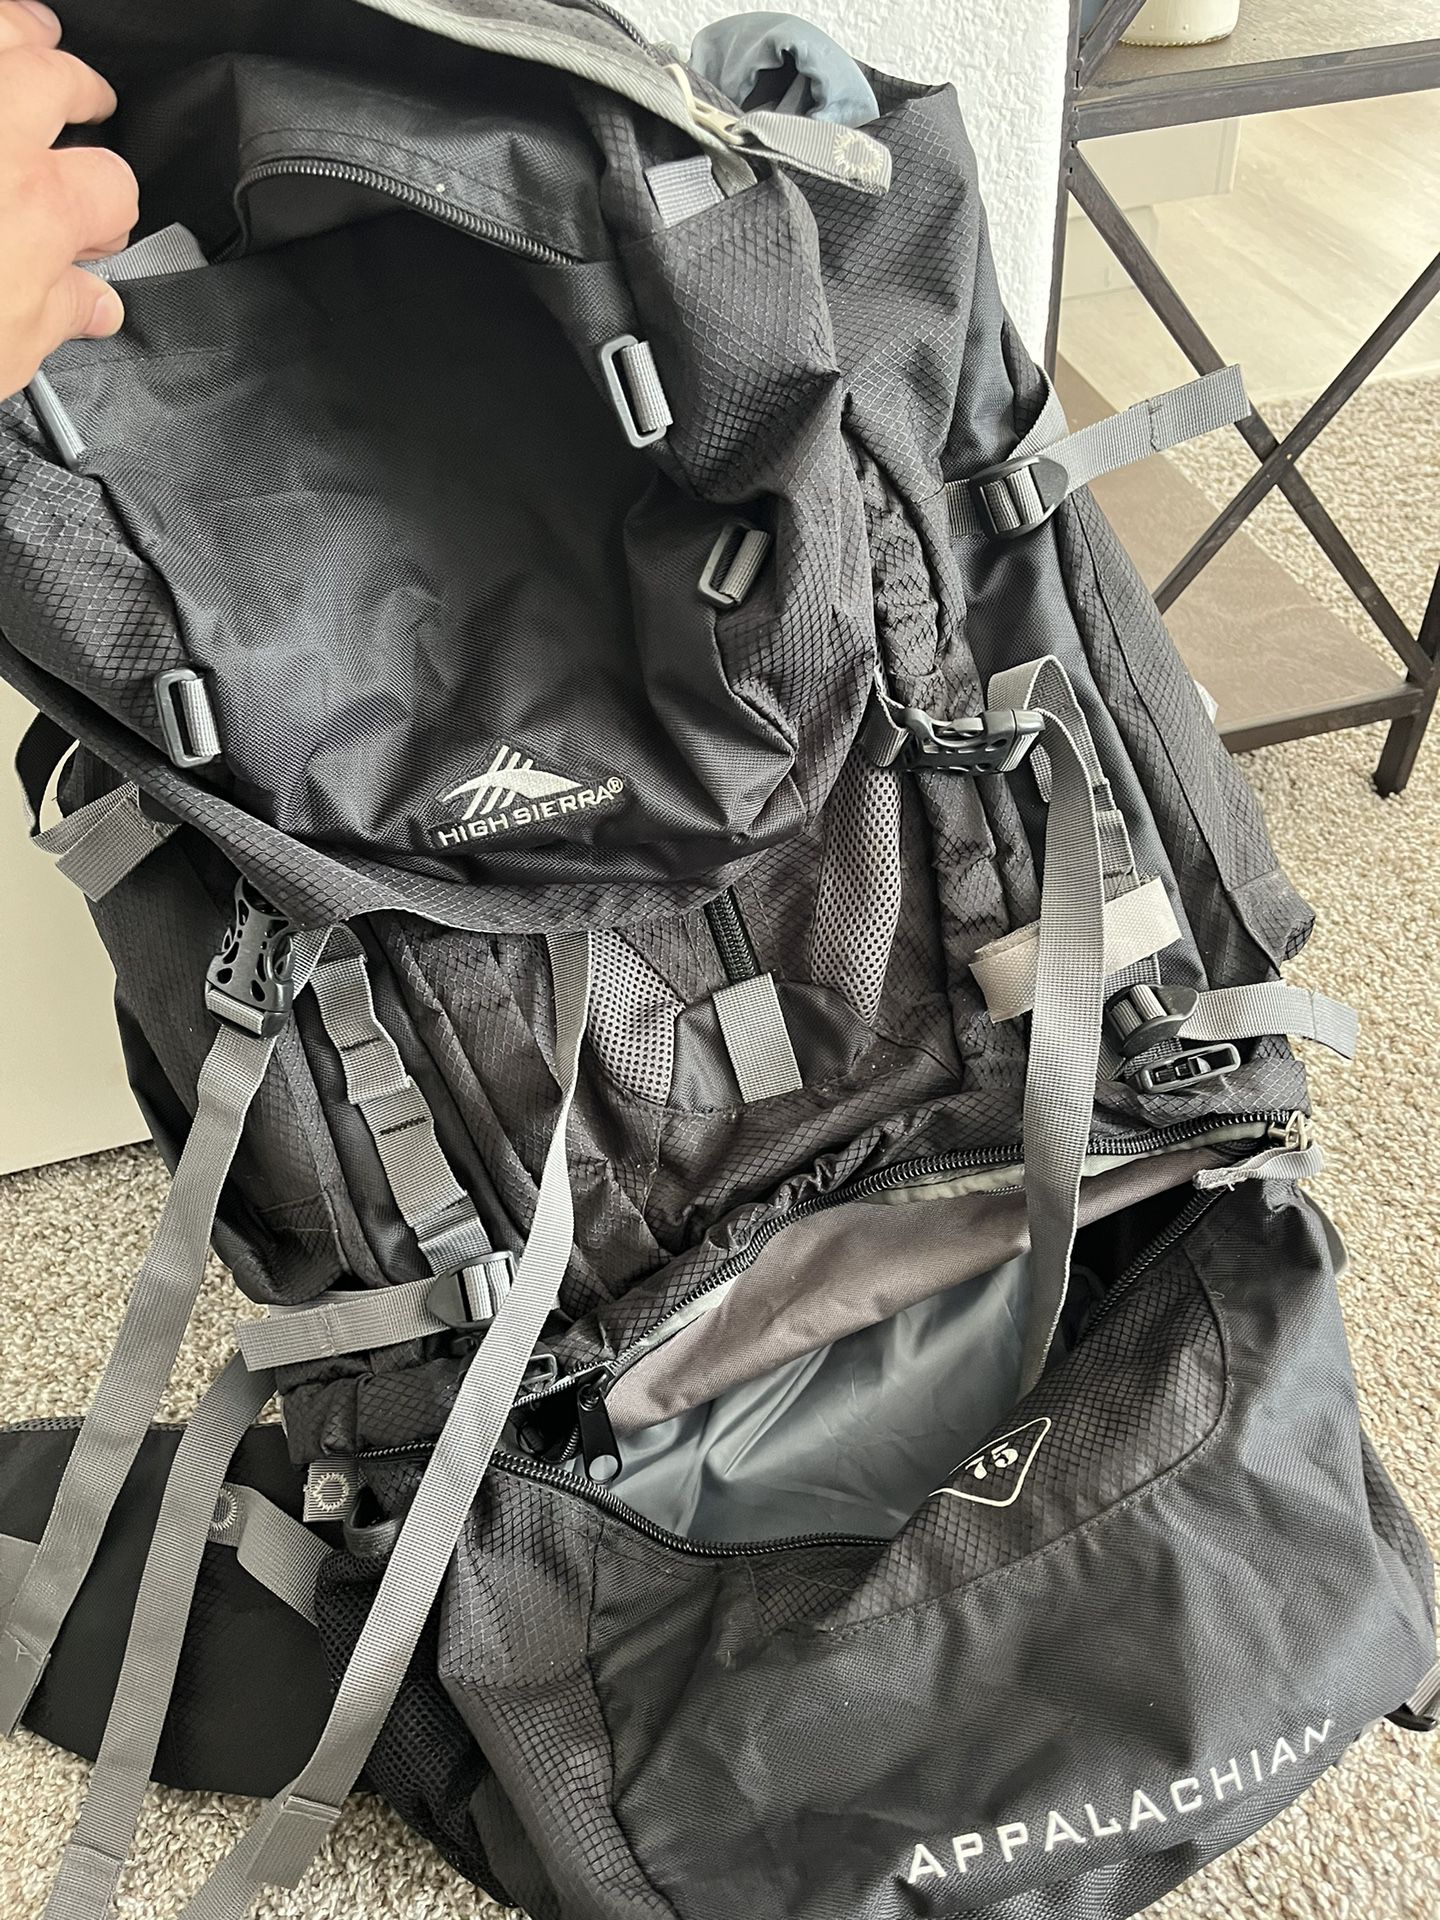 High Sierra Backpacking Pack